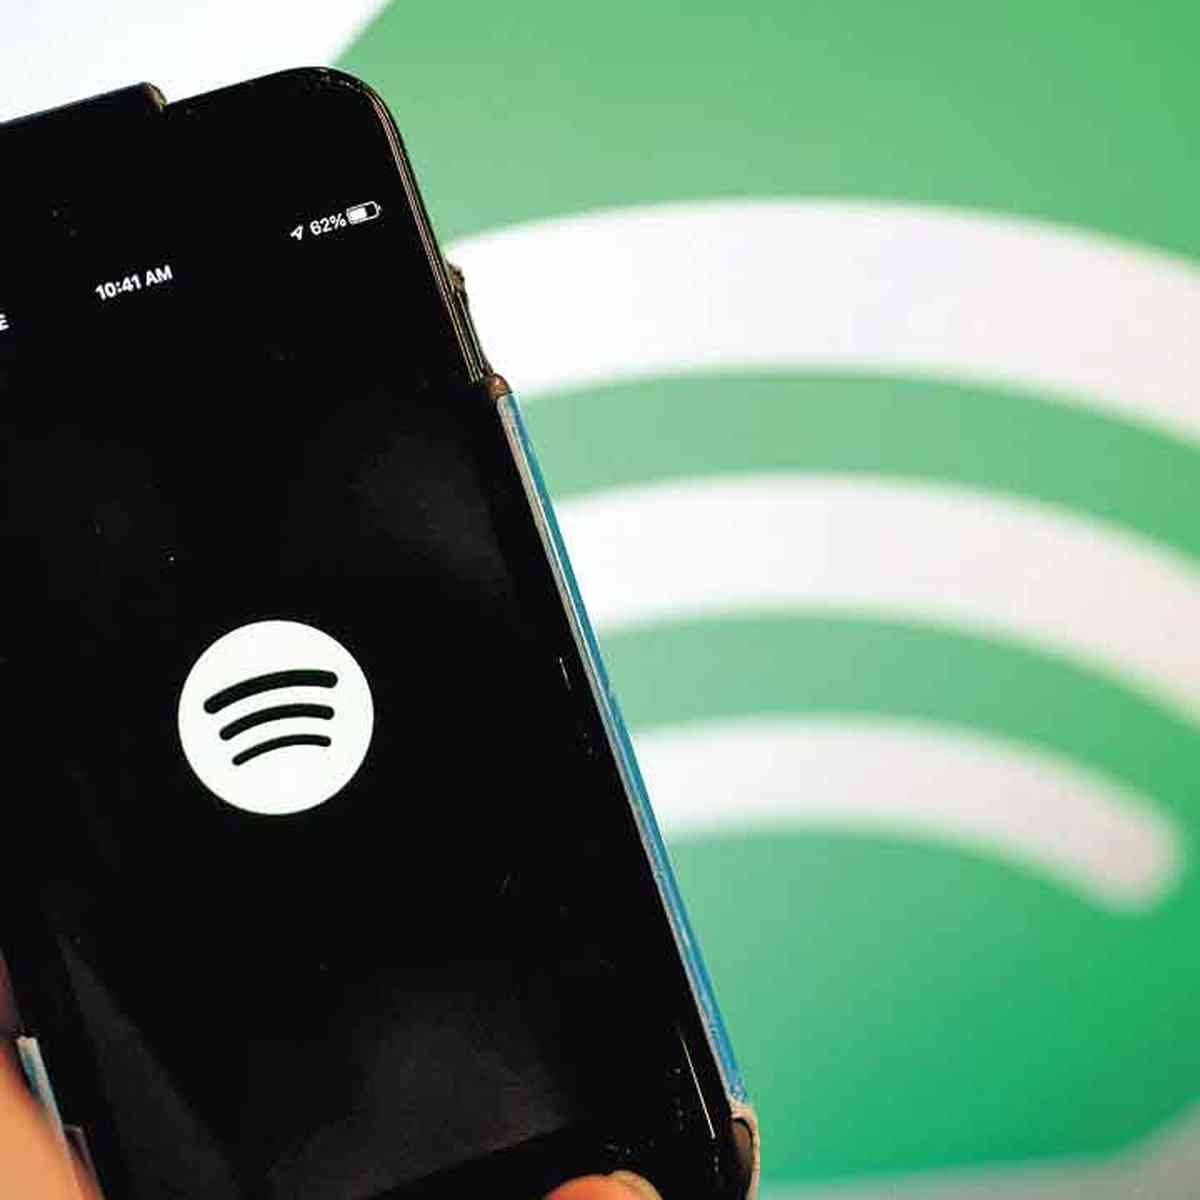 Spotify Brasil usa e abusa de conteúdo negacionista, entre eles